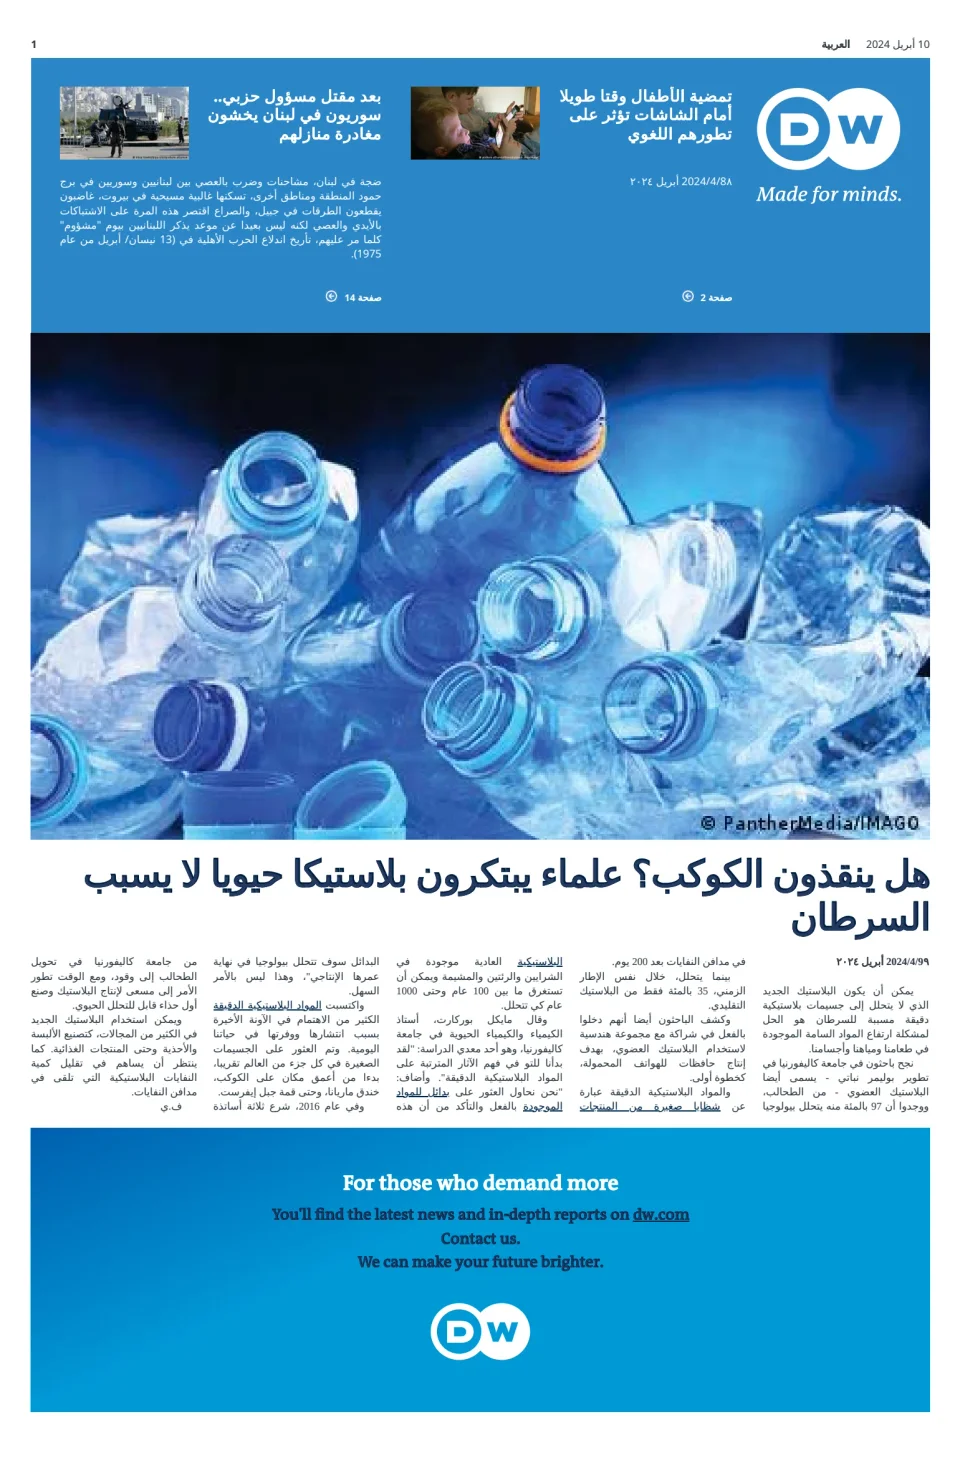 Deutsche Welle (Arabic Edition)